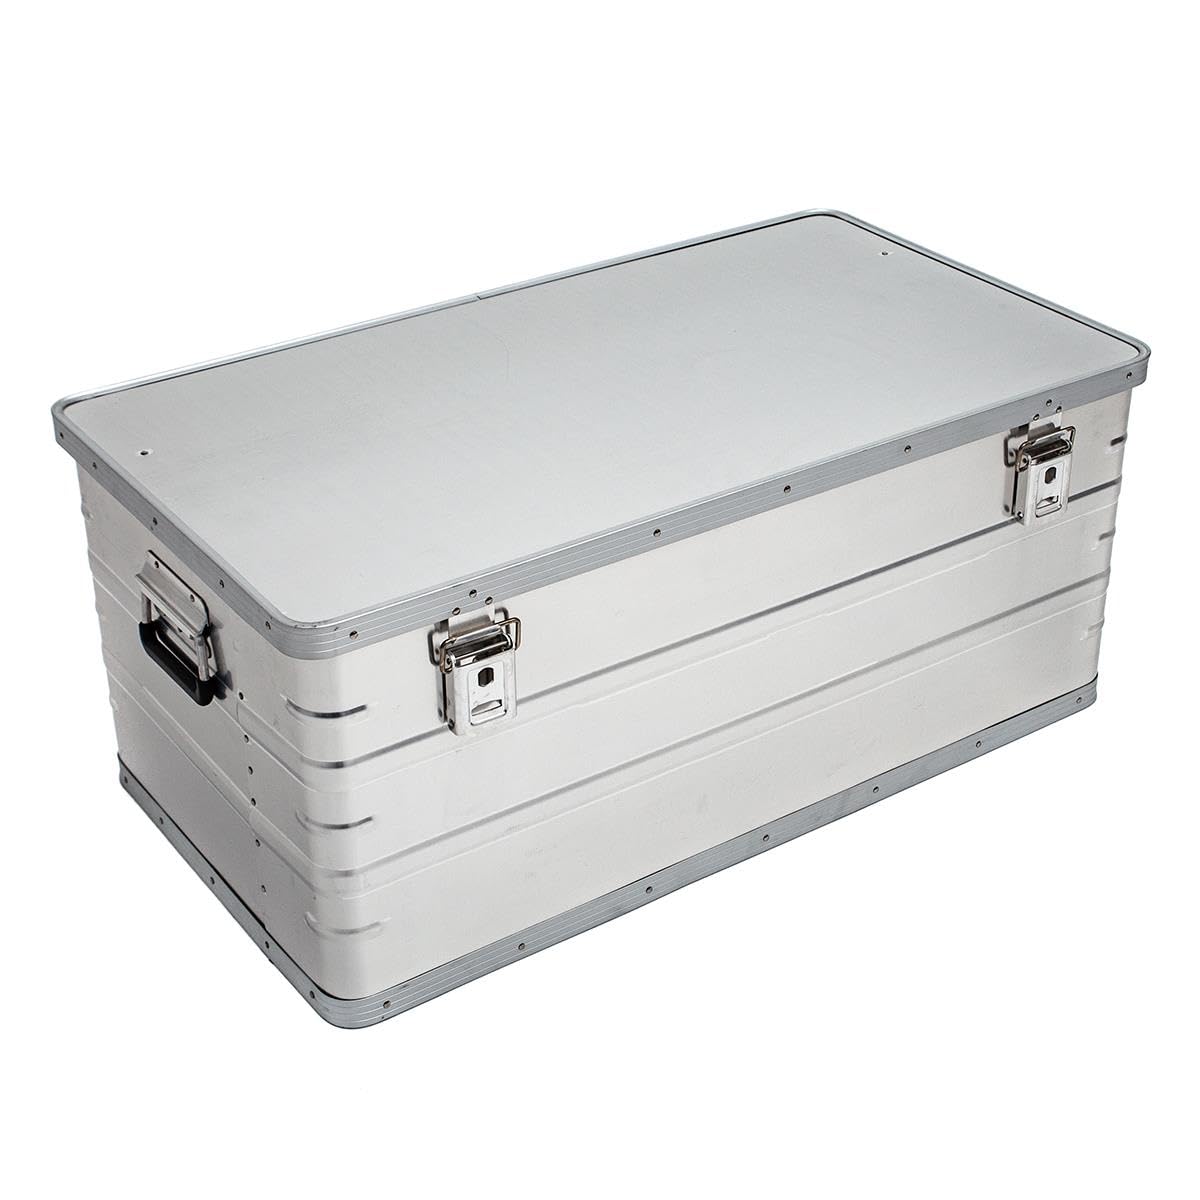 Aluminium Behälter mit Deckel - 162,9 Liter - 89,2 x 48,5 x 38,3 cm - korrosionsbeständig - mit Gummidichtung und 2 Klapphandgriffen - Aluminiumbox, Transportkiste, Werkzeugkiste, Lagerbox